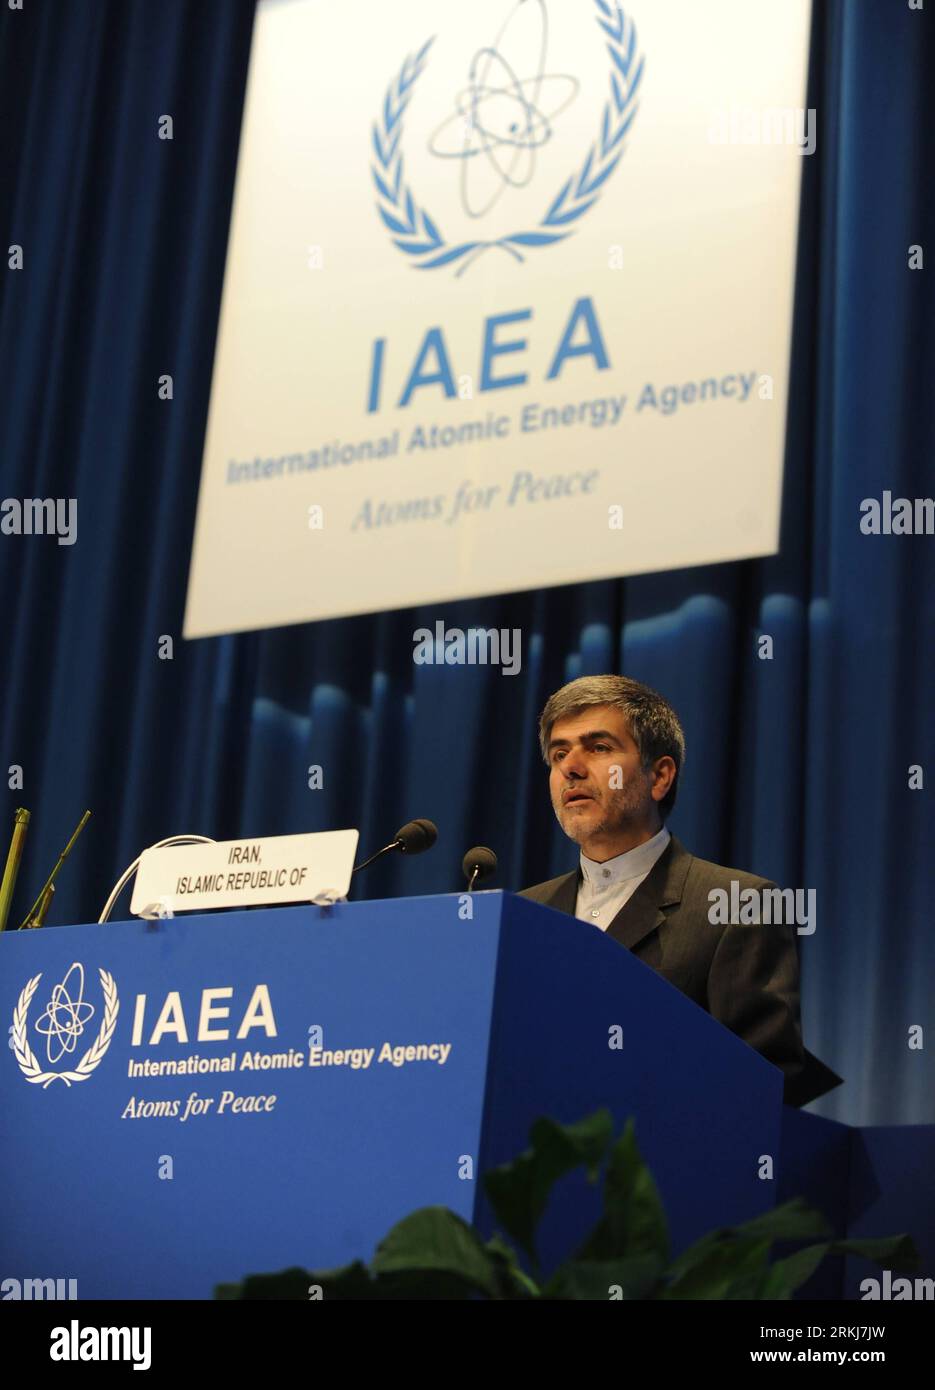 Bildnummer : 56030455 Datum : 19.09.2011 Copyright : imago/Xinhua (110919) -- VIENNE, 19 septembre 2011 (Xinhua) -- Fereydoun Abbasi Davani, vice-président iranien et chef de l’Organisation iranienne de l’énergie atomique, prend la parole lors de la 55e Conférence générale de l’Agence internationale de l’énergie atomique (AIEA) au siège de l’AIEA à Vienne, capitale de l’Autriche, le 19 septembre 2011. Les délégations des 151 États membres de l AIEA se concentreront sur la sûreté nucléaire à la suite de la catastrophe survenue à la centrale nucléaire japonaise de Fukushima au cours de la conférence de cinq jours. (Xinhua/Xu Liang)(yh) CONFÉRENCE AUTRICHE-VIENNE-AIEA PUBLICATIONxNOTx Banque D'Images